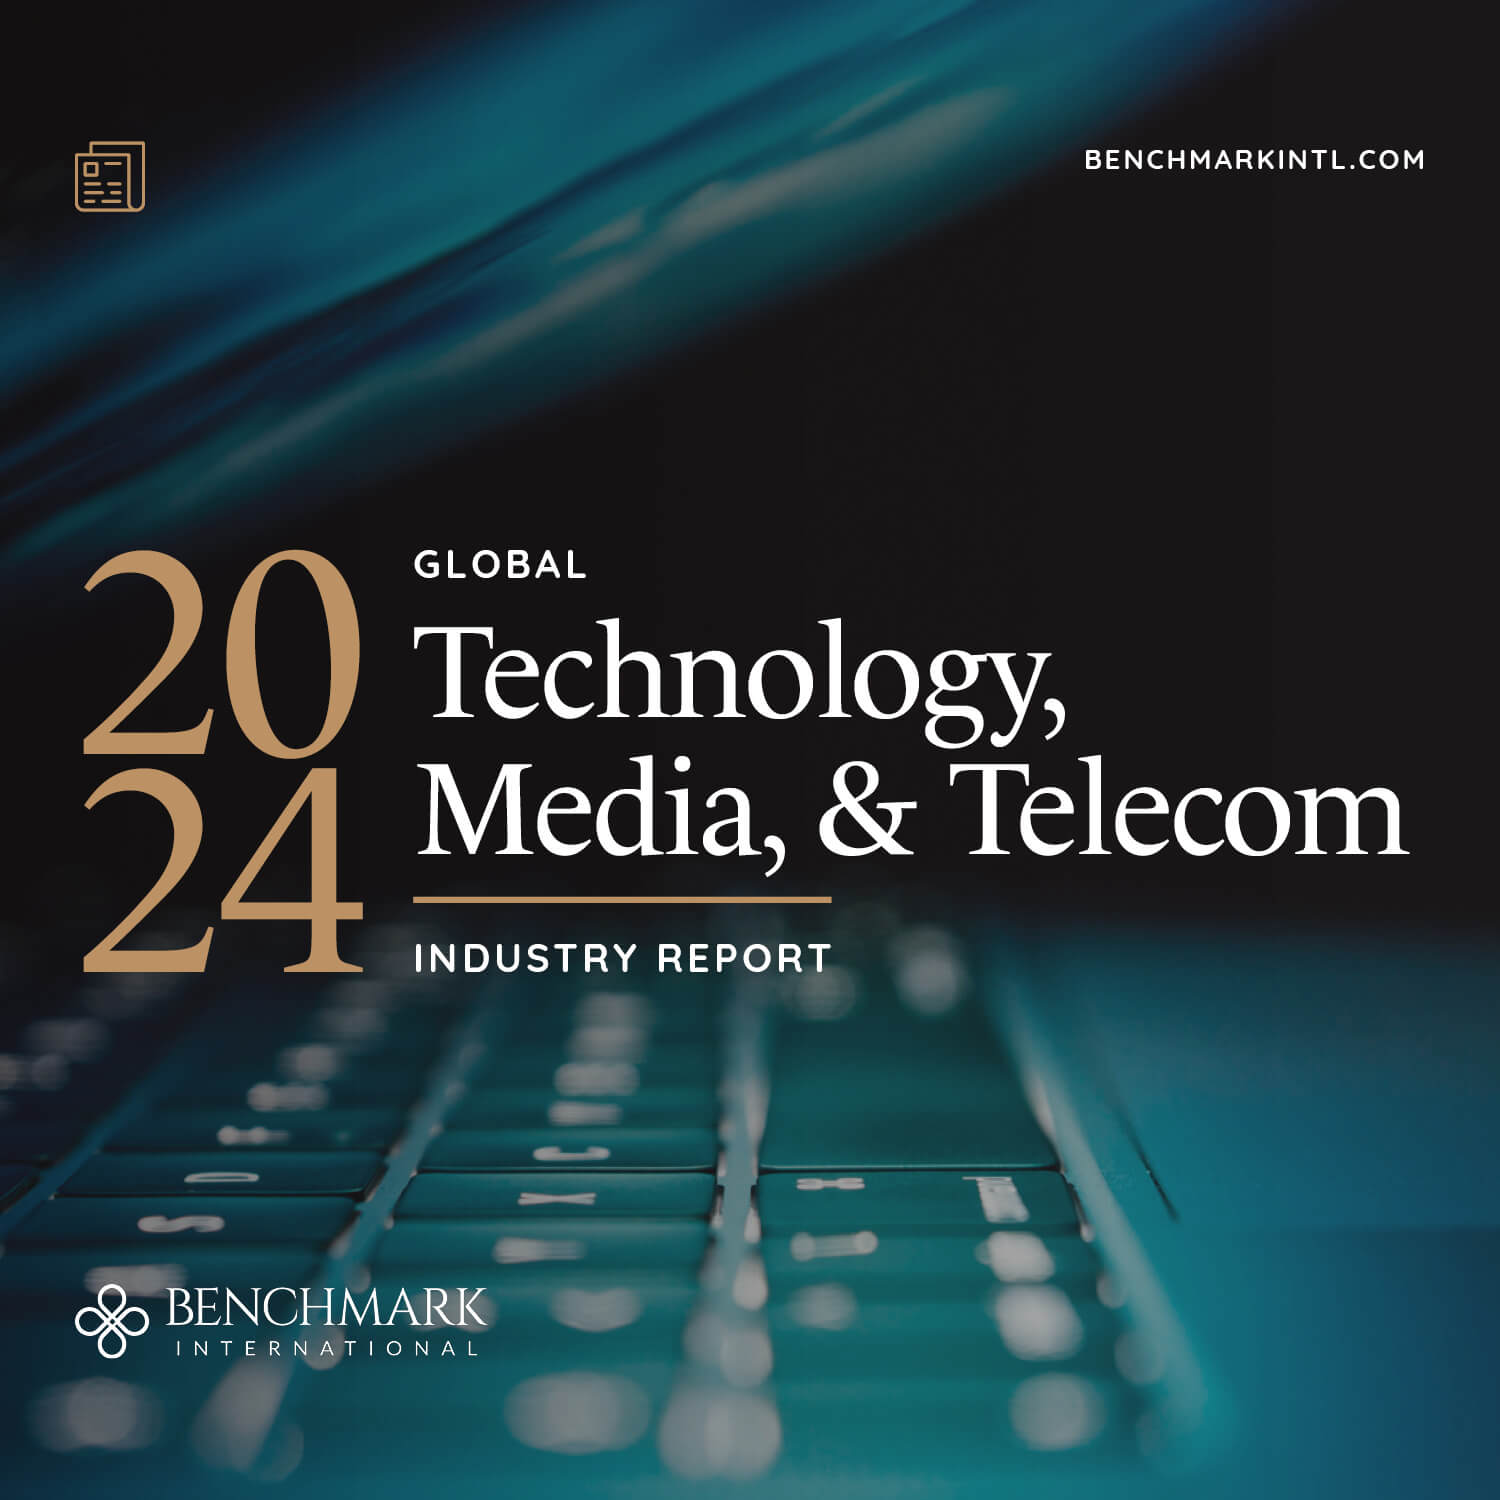 MRKTG_Social_Blog_Mobile_Industry_Report_Tech_Media_&_Telecom